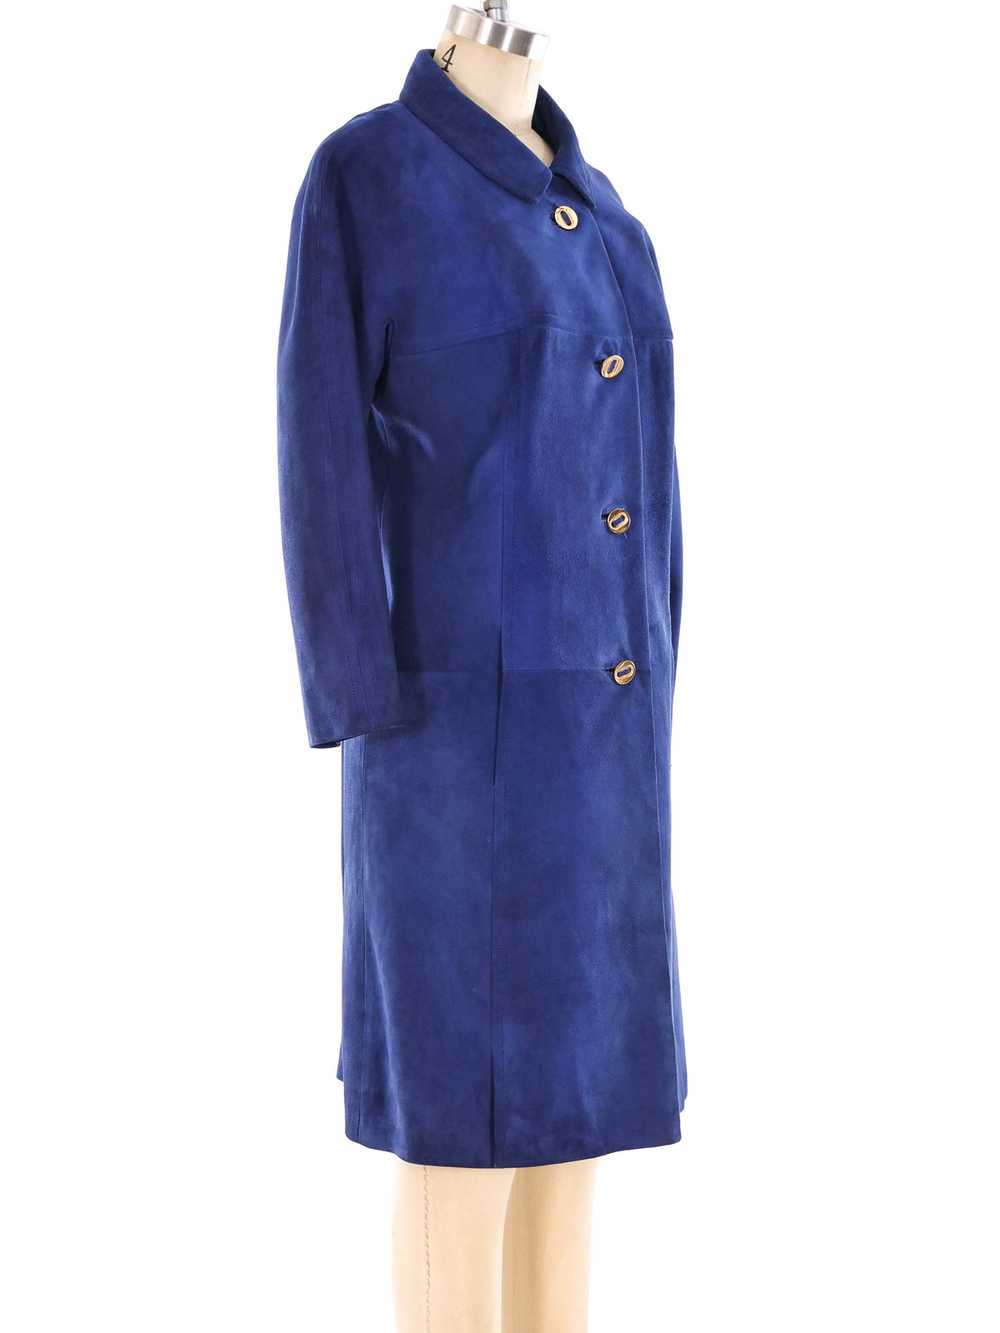 Loewe Blue Suede Jacket - image 3